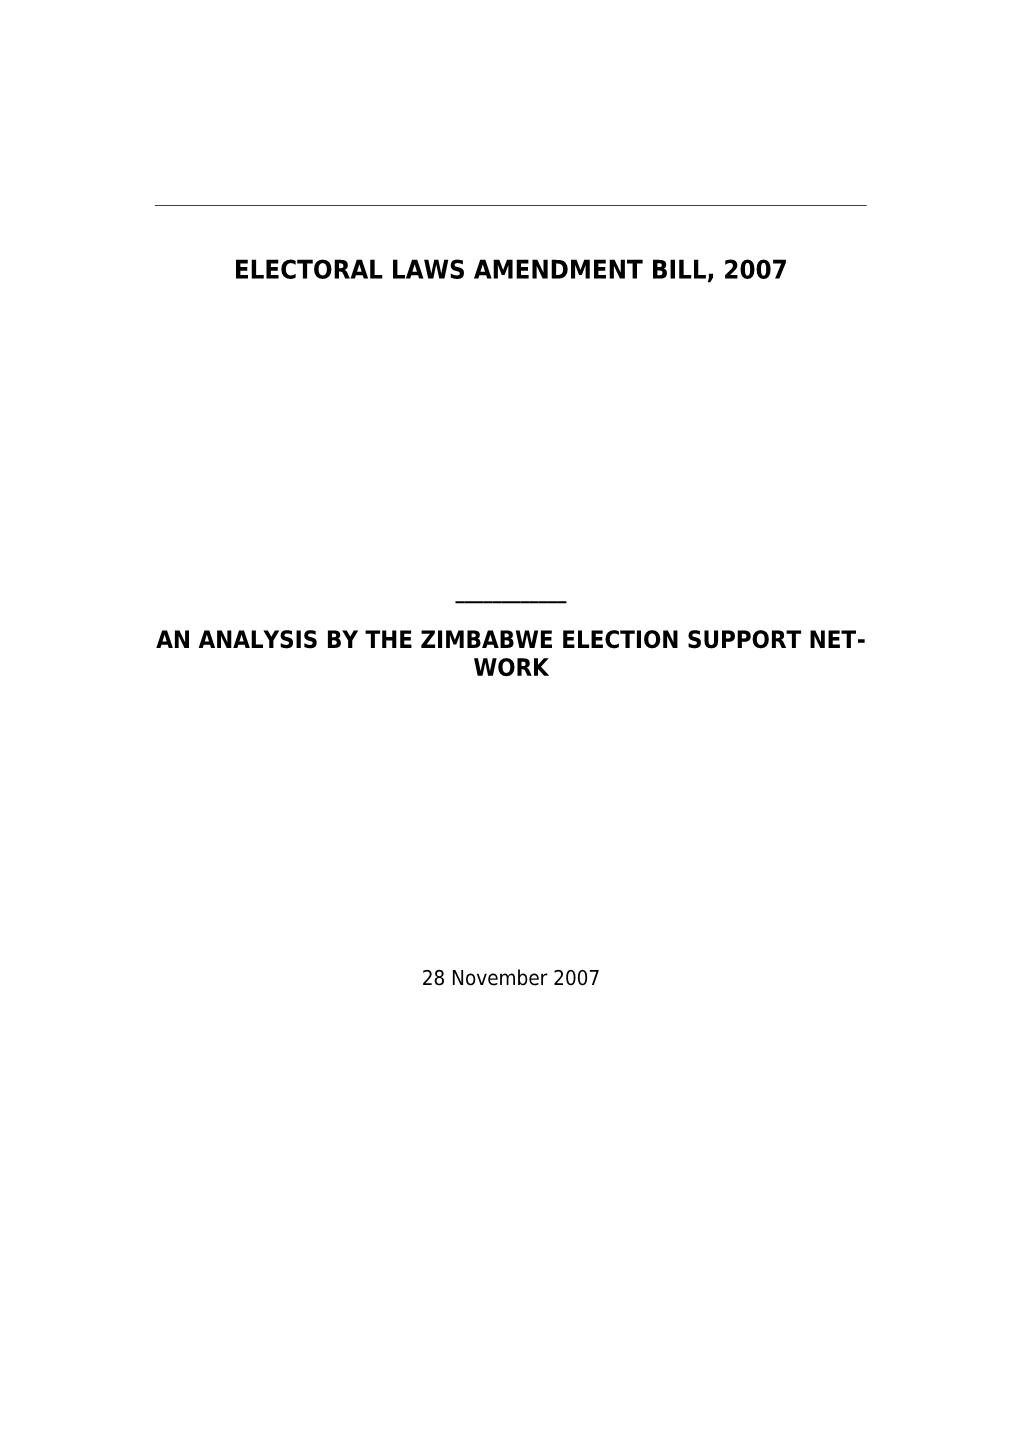 Electoral Laws Amendment Bill, 2007